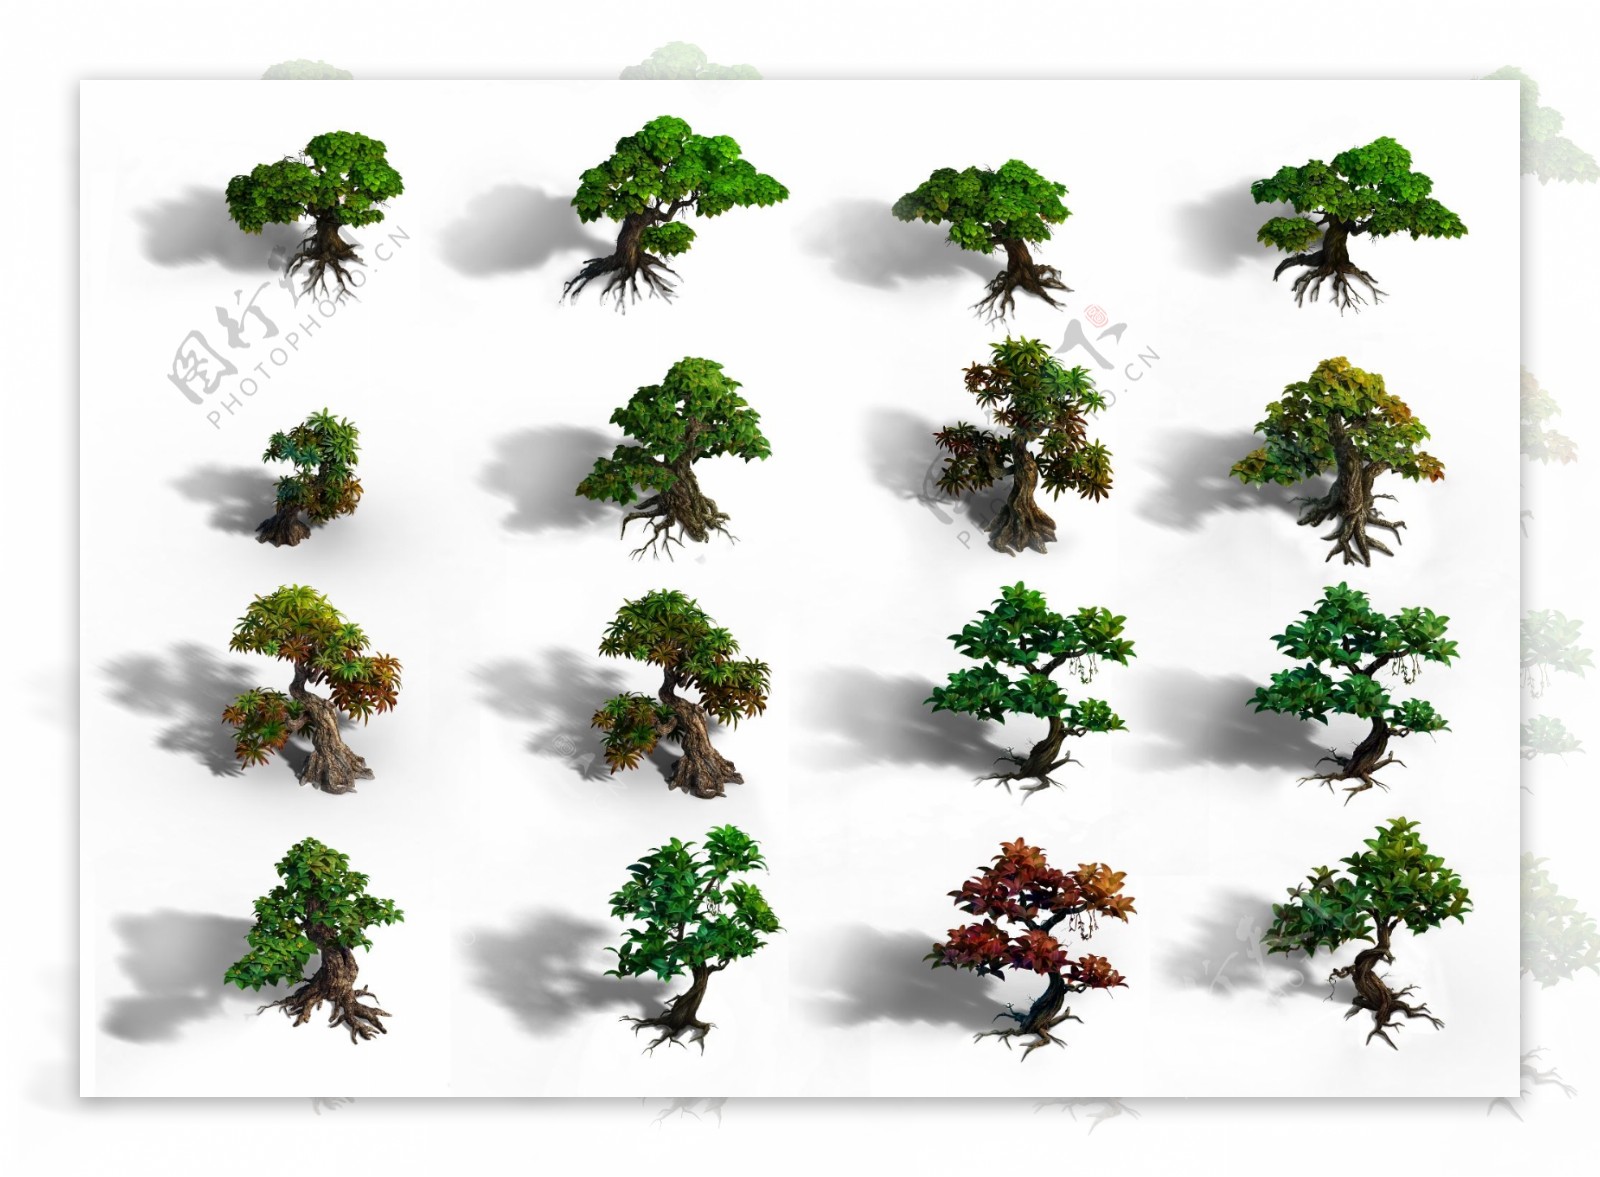 新品种树游戏树木图片